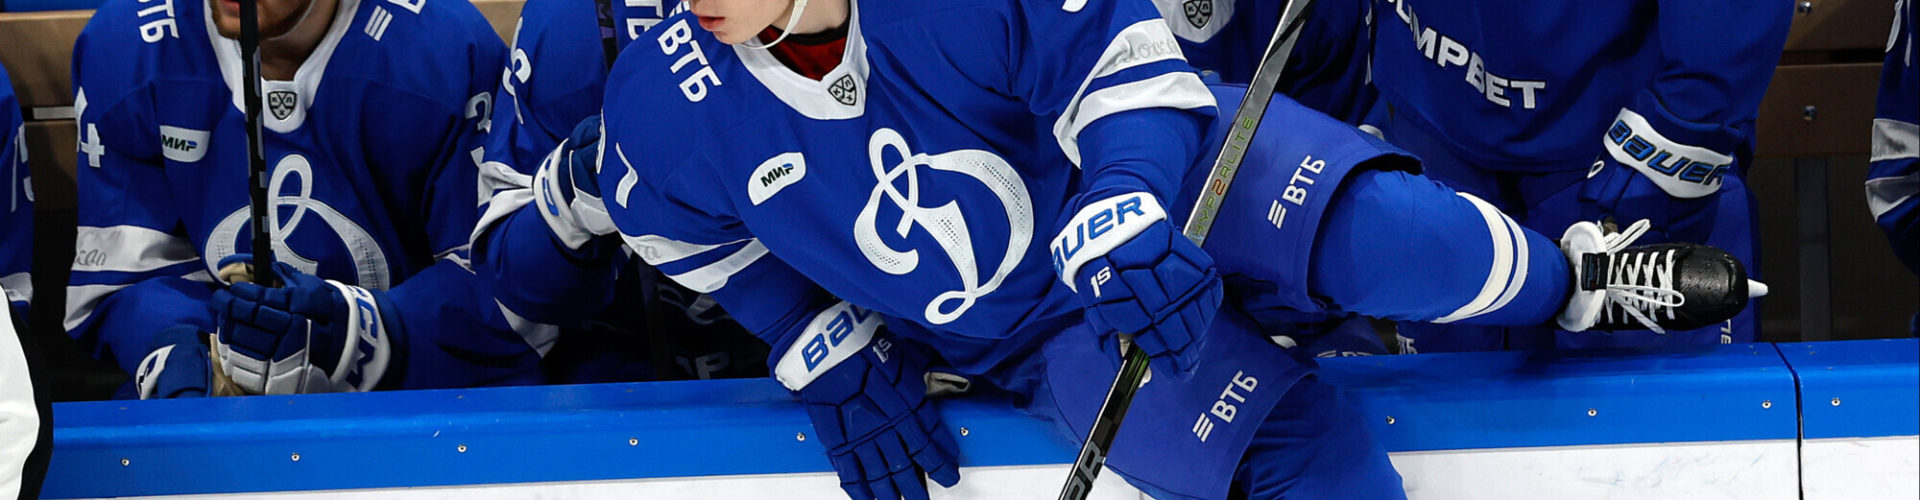 Никита Гусев стал пятым игроком в истории КХЛ, который набрал больше 600 очков